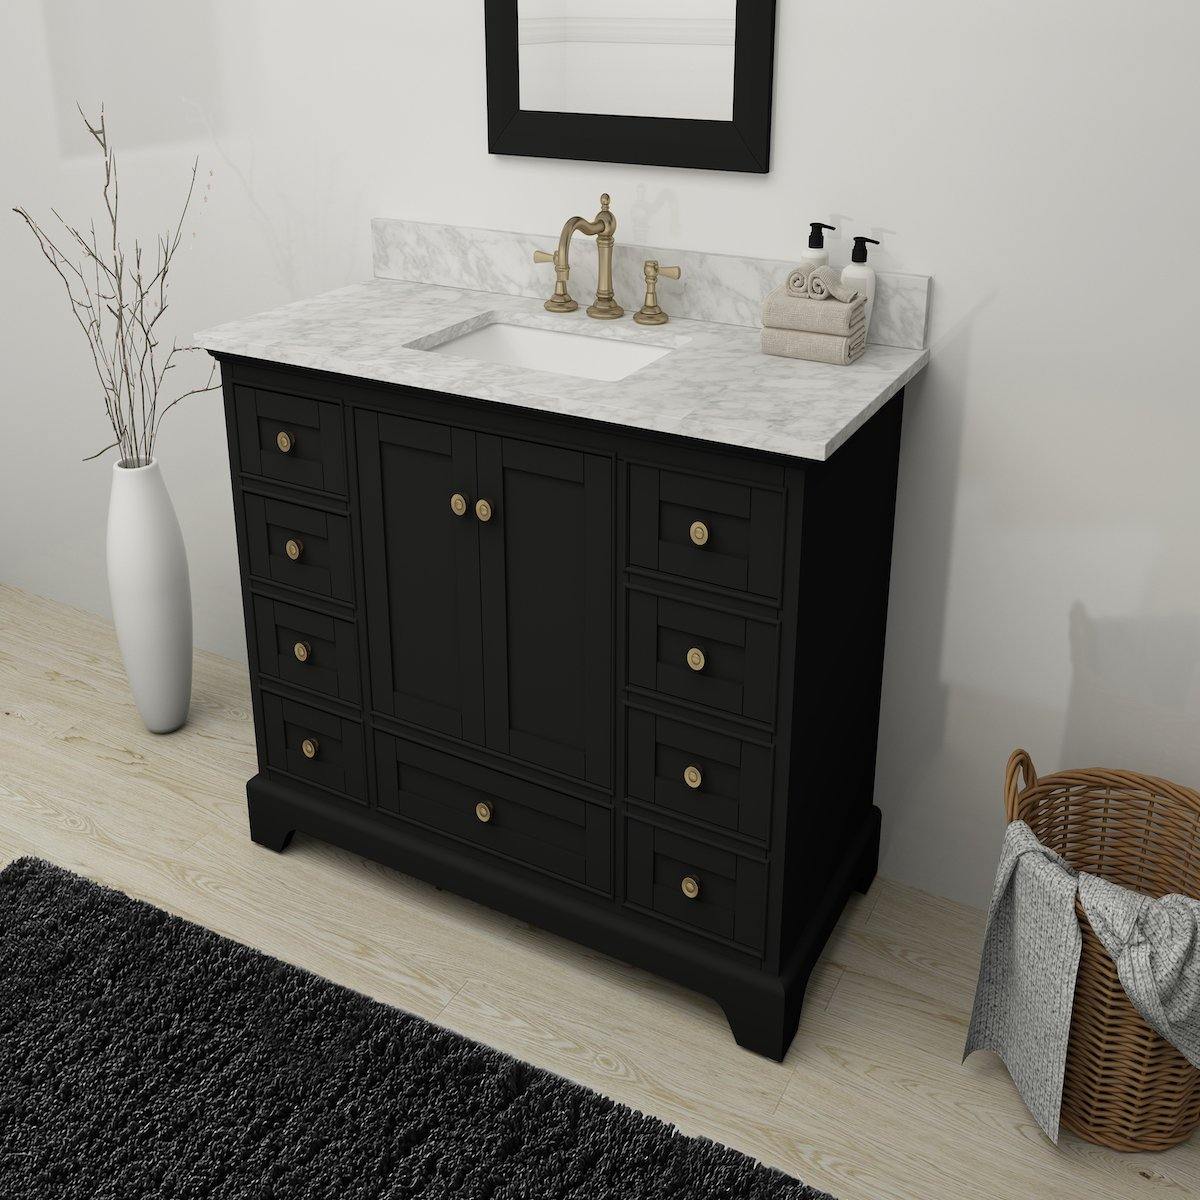 Ancerre Designs Audrey 48 Inch Onyx Black Single Vanity in Bathroom